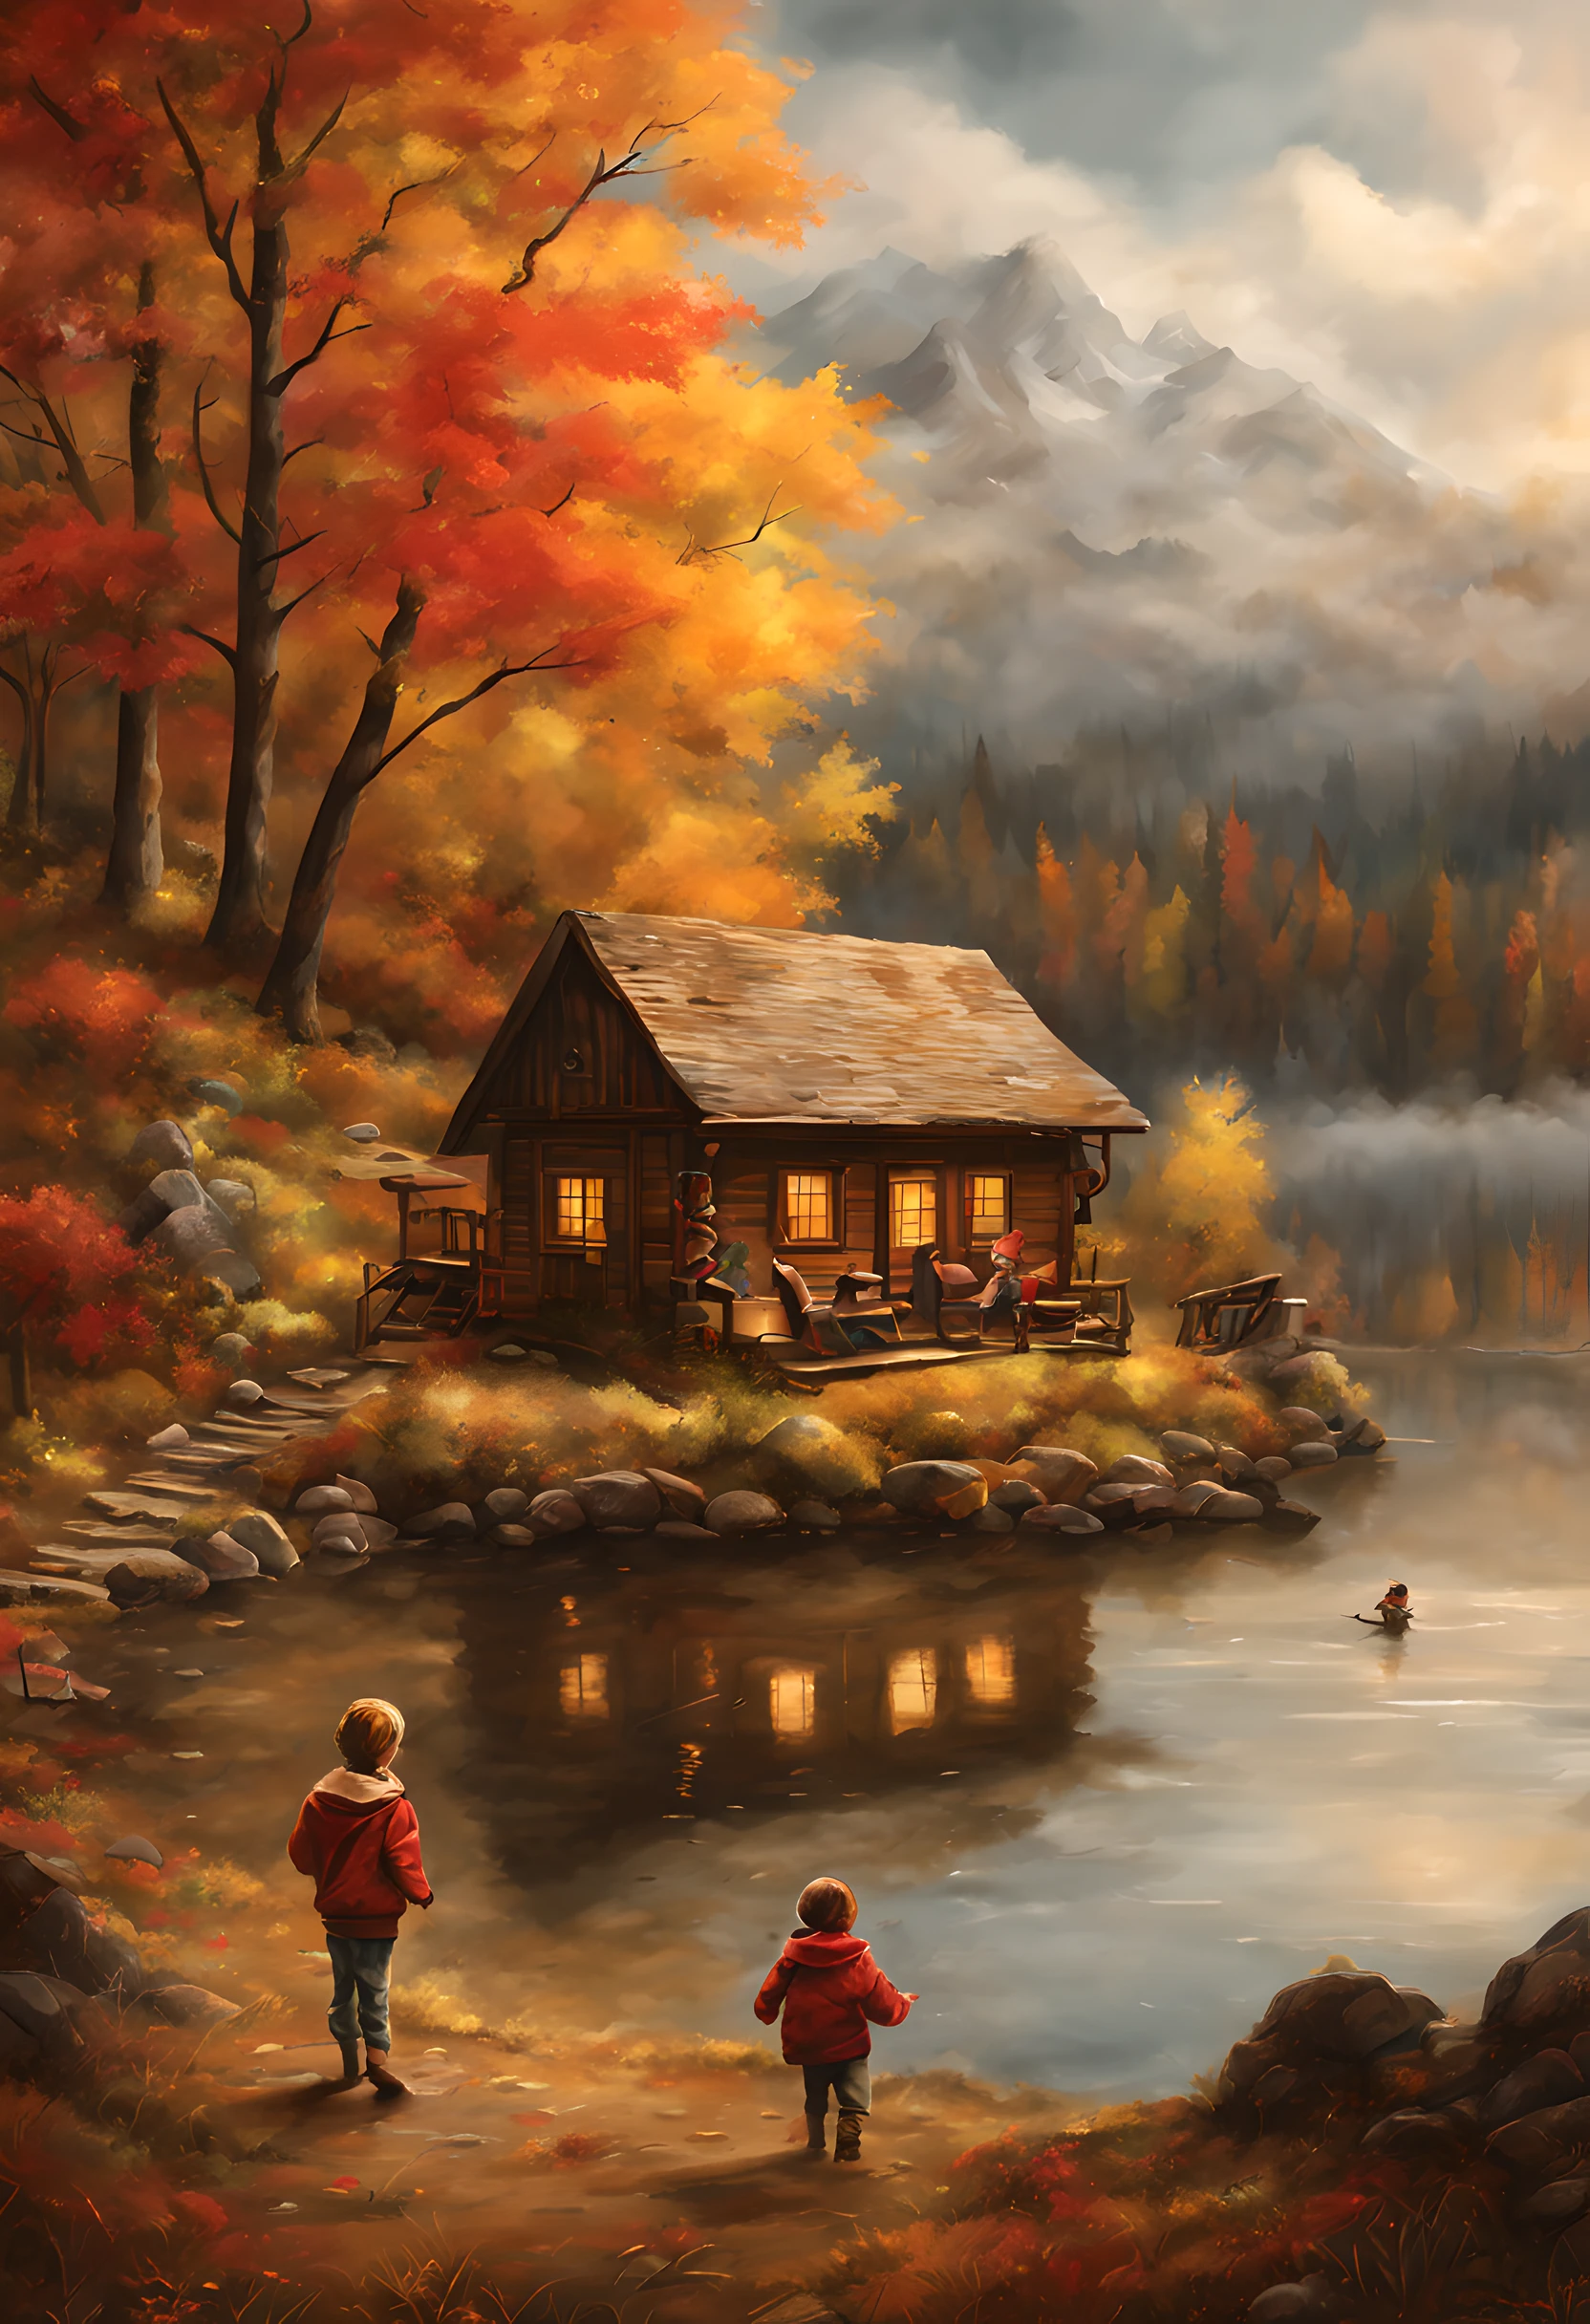 어둡고 우울한 호수 한가운데에 있는 귀여운 오두막 앞에서 많은 아이들이 노는 모습을 묘사한 걸작 예술, 산에서, 가을날